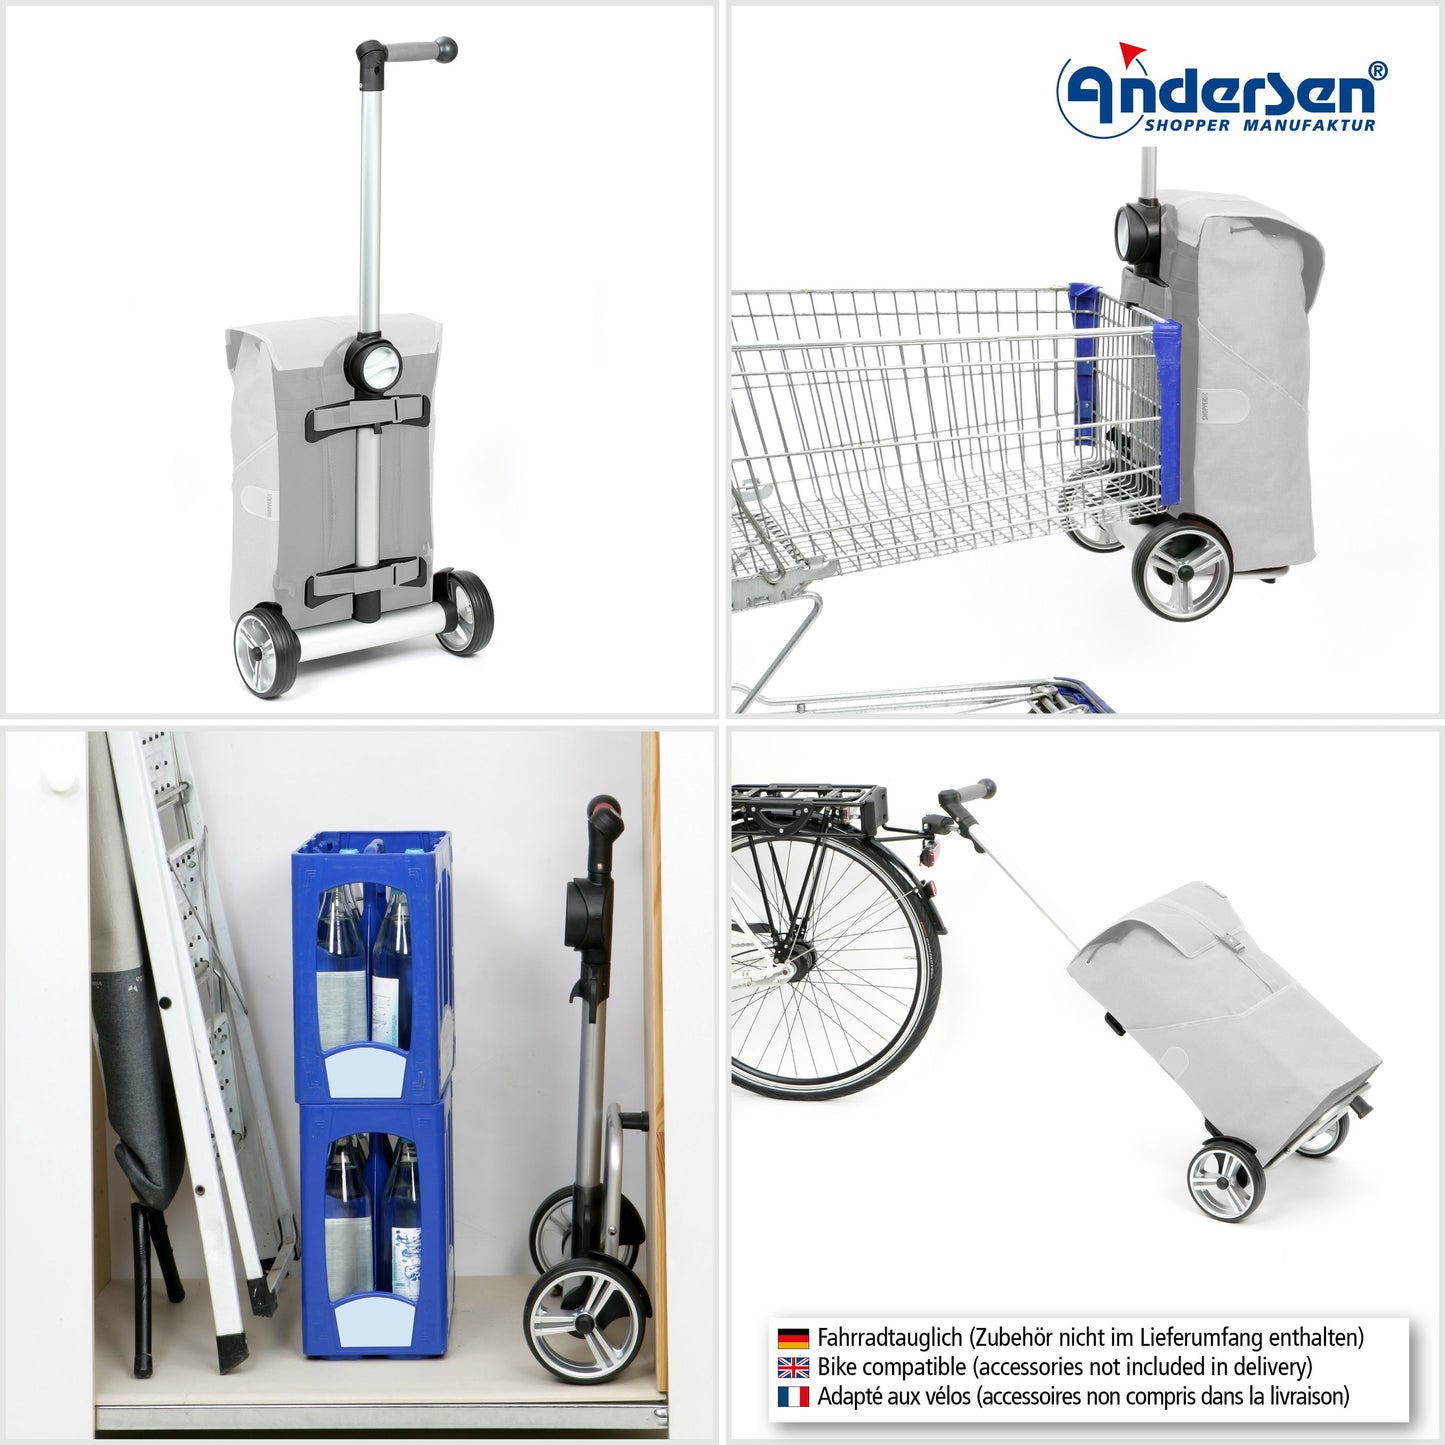 Andersen Shopper Manufaktur-Unus Shopper Reik blau-www.shopping-trolley.ch-bild5